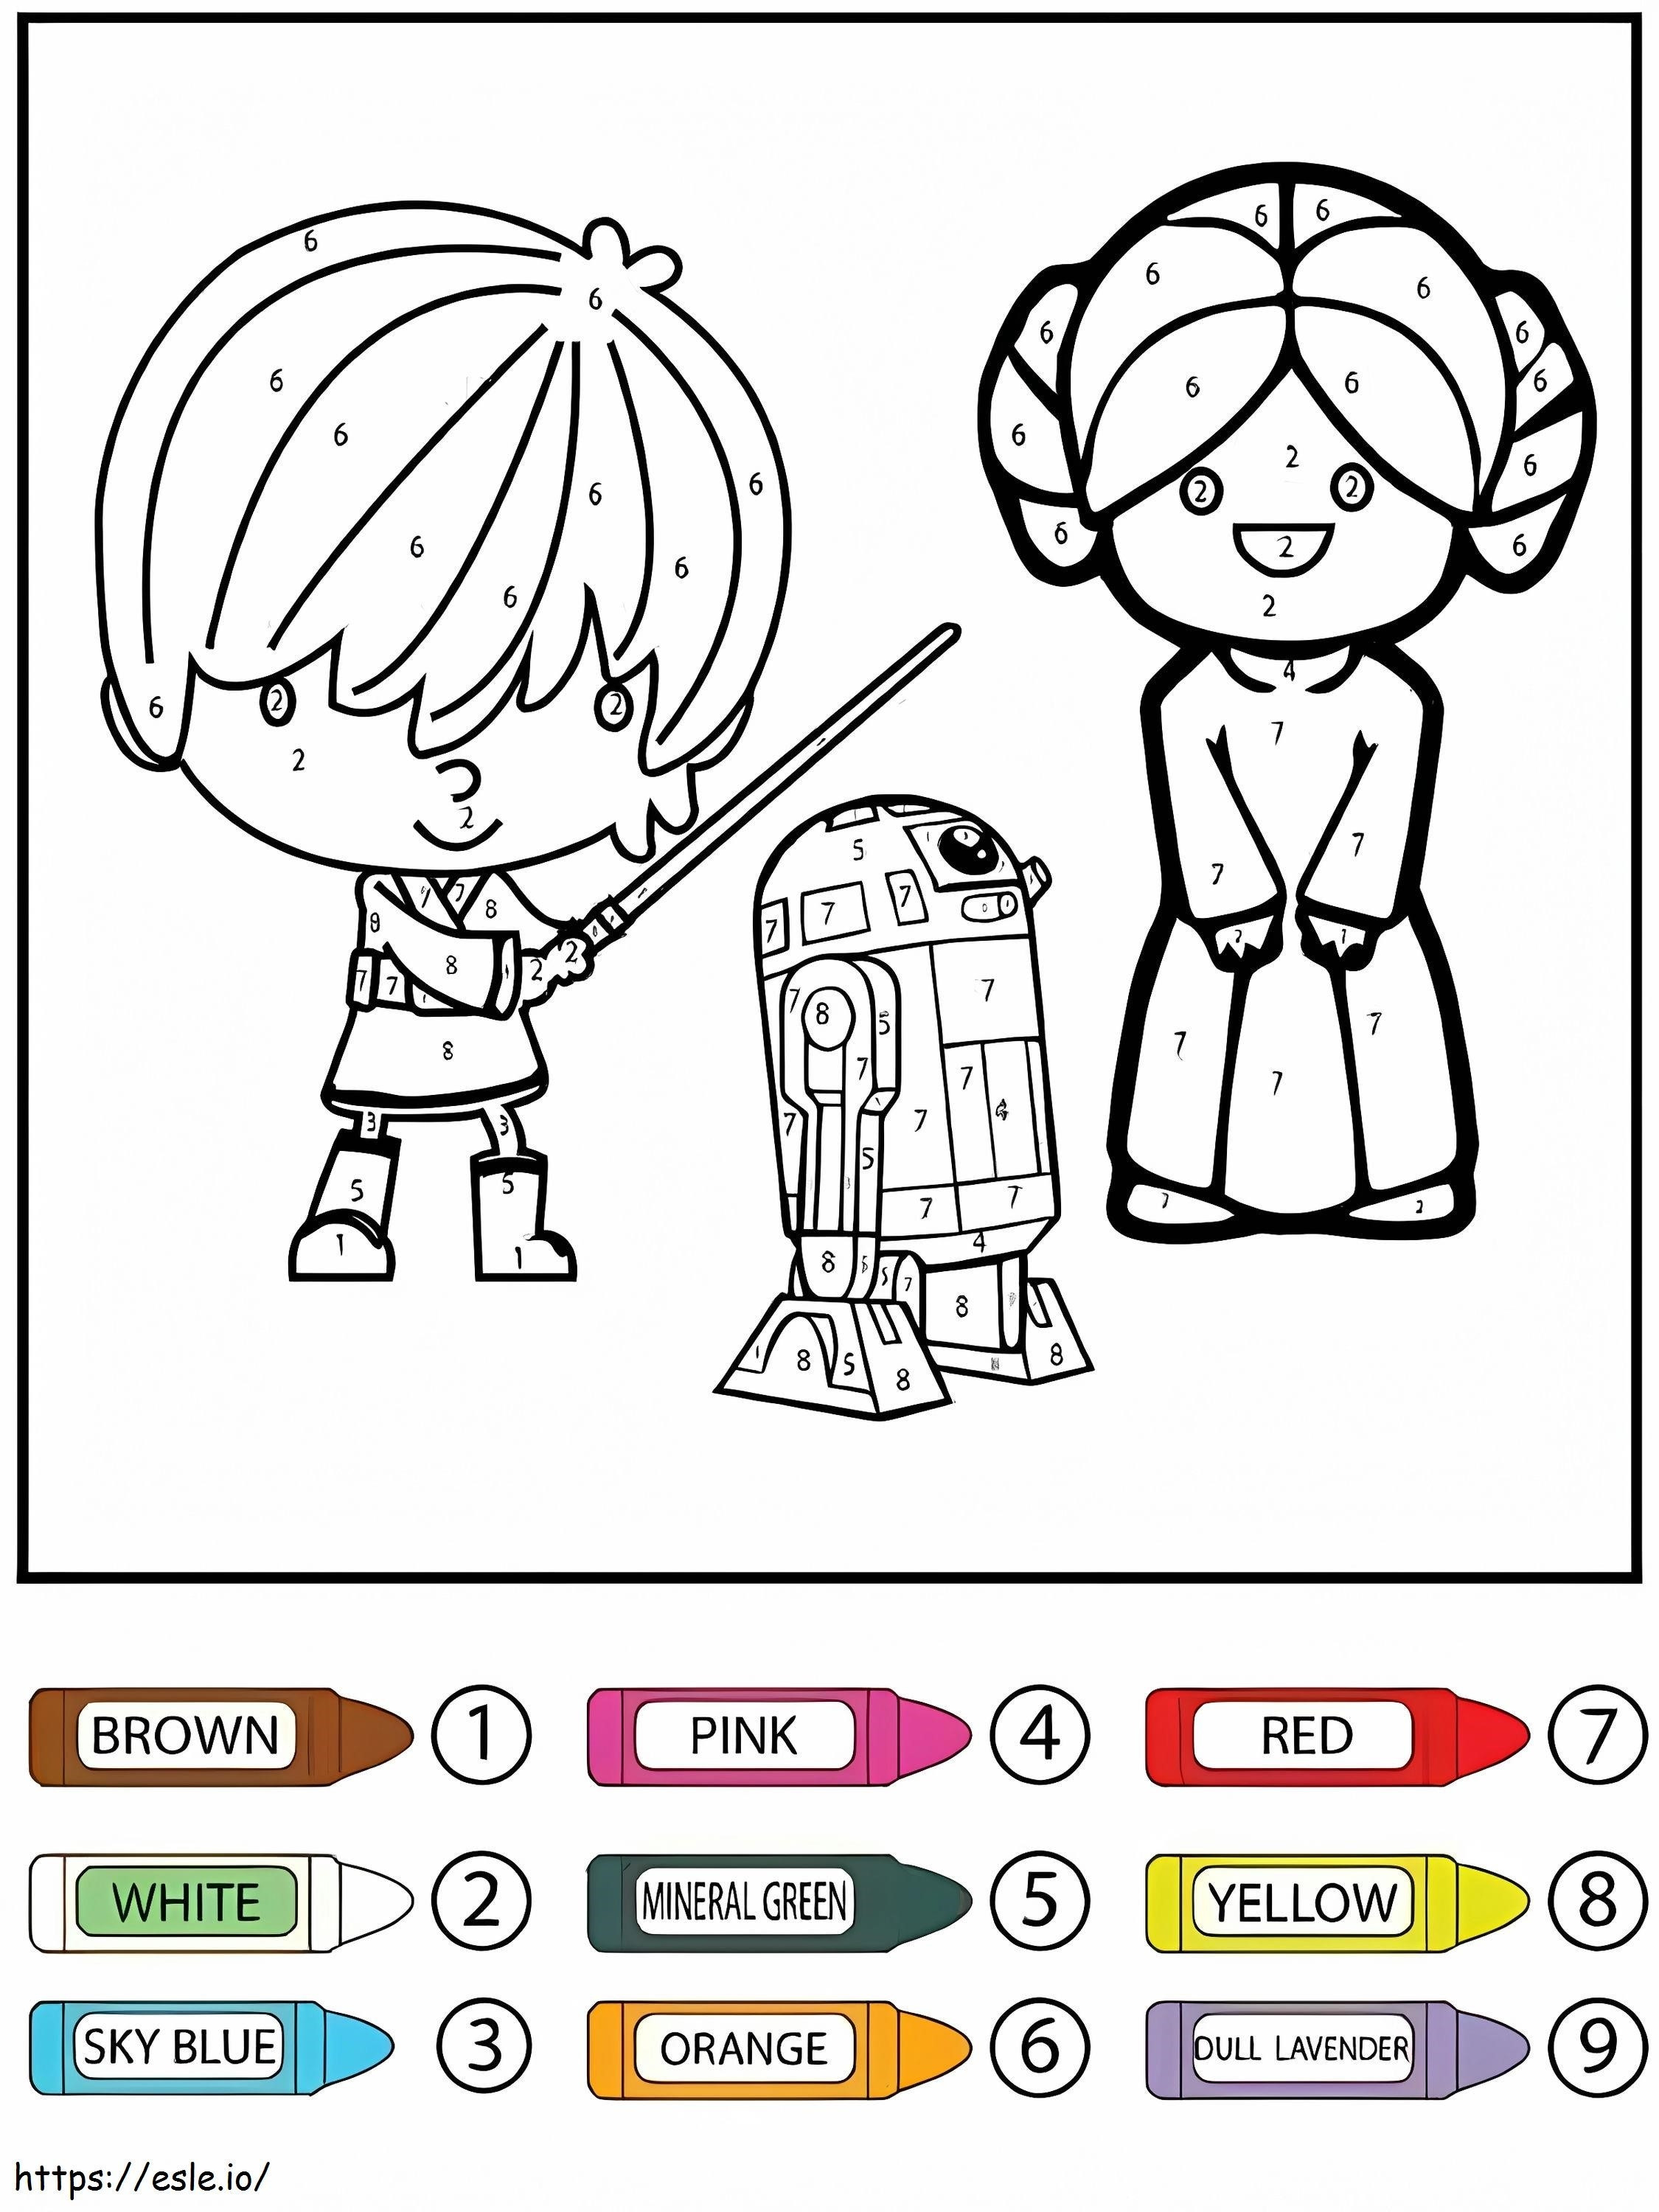 Colore per numero del robot Star Wars Kids e R2 D2 da colorare